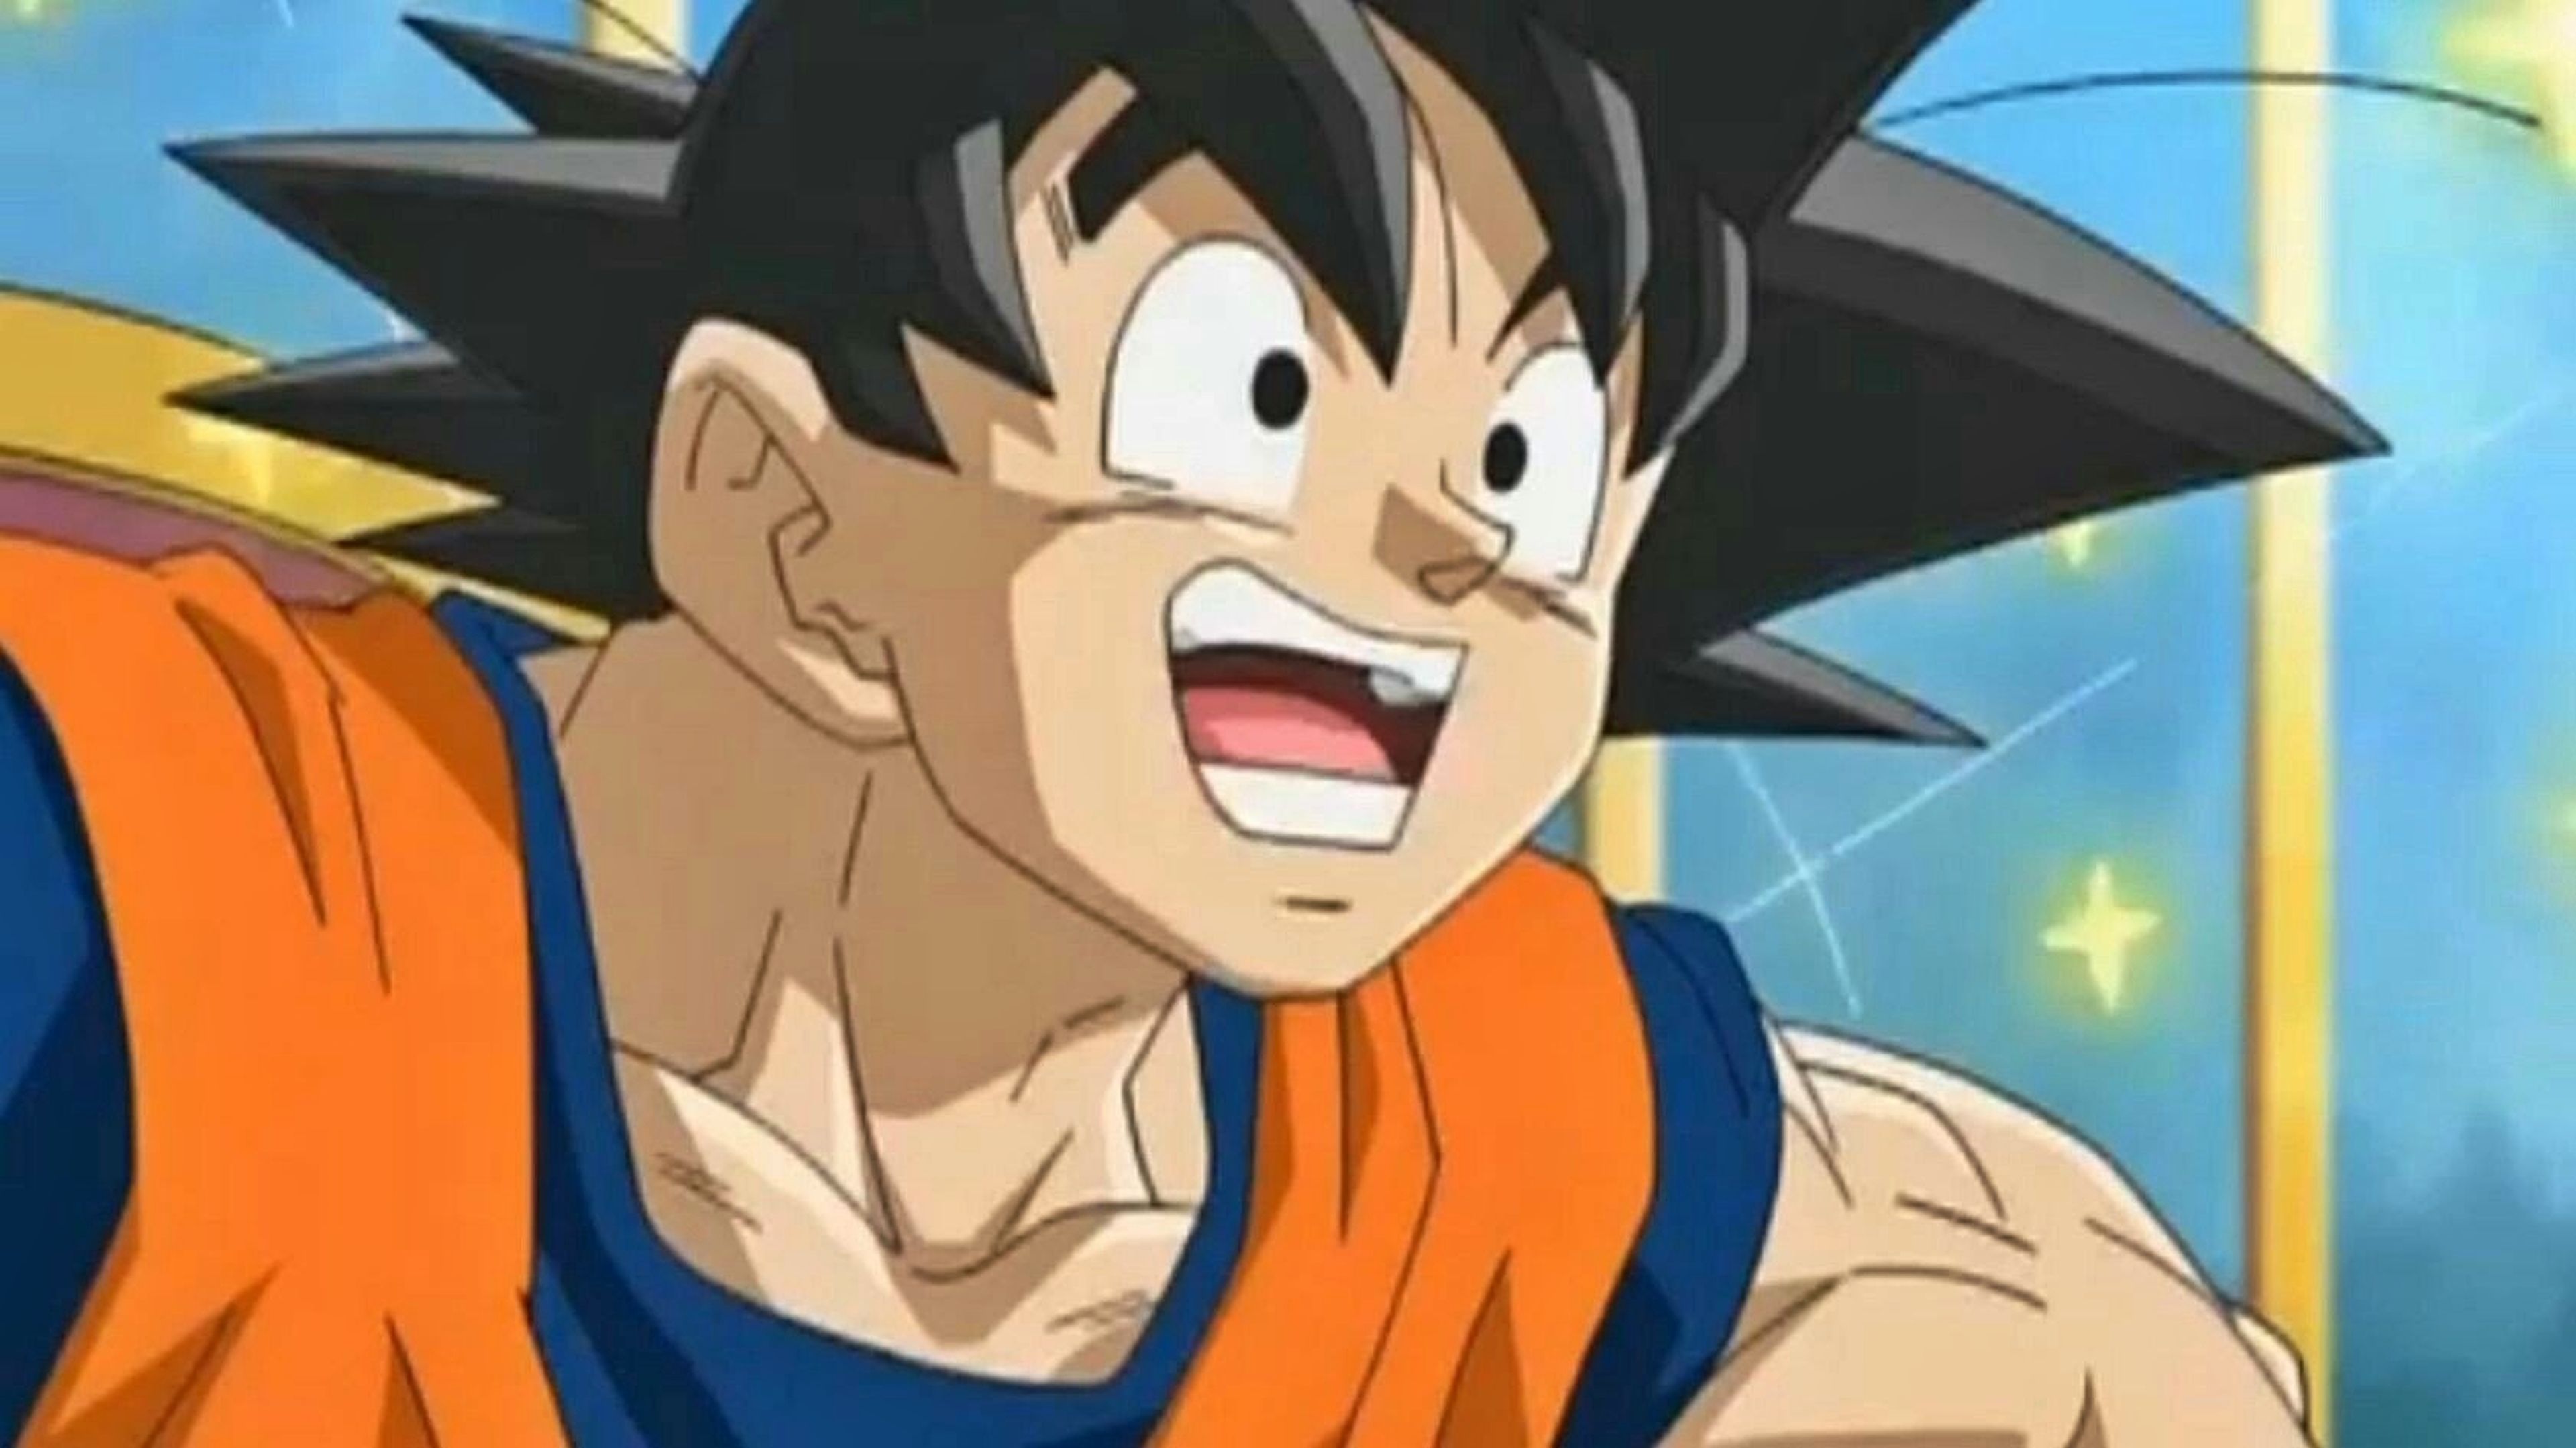 Dragon Ball - Son Goku